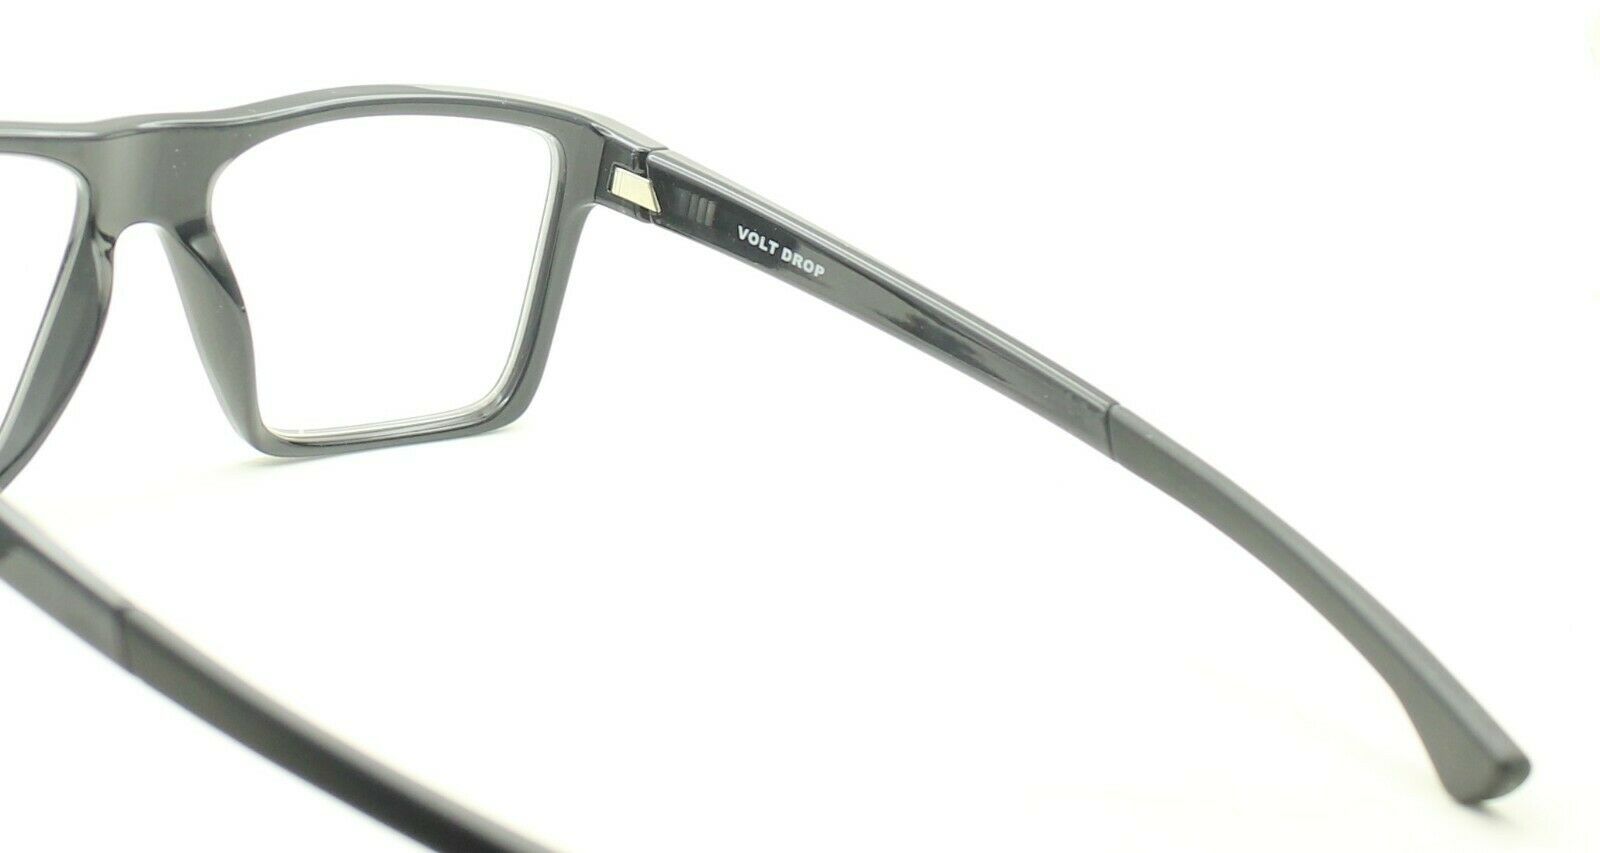 OAKLEY VOLT DROP OX8167-0254 Eyewear FRAMES RX Optical Eyeglasses Glasses - New